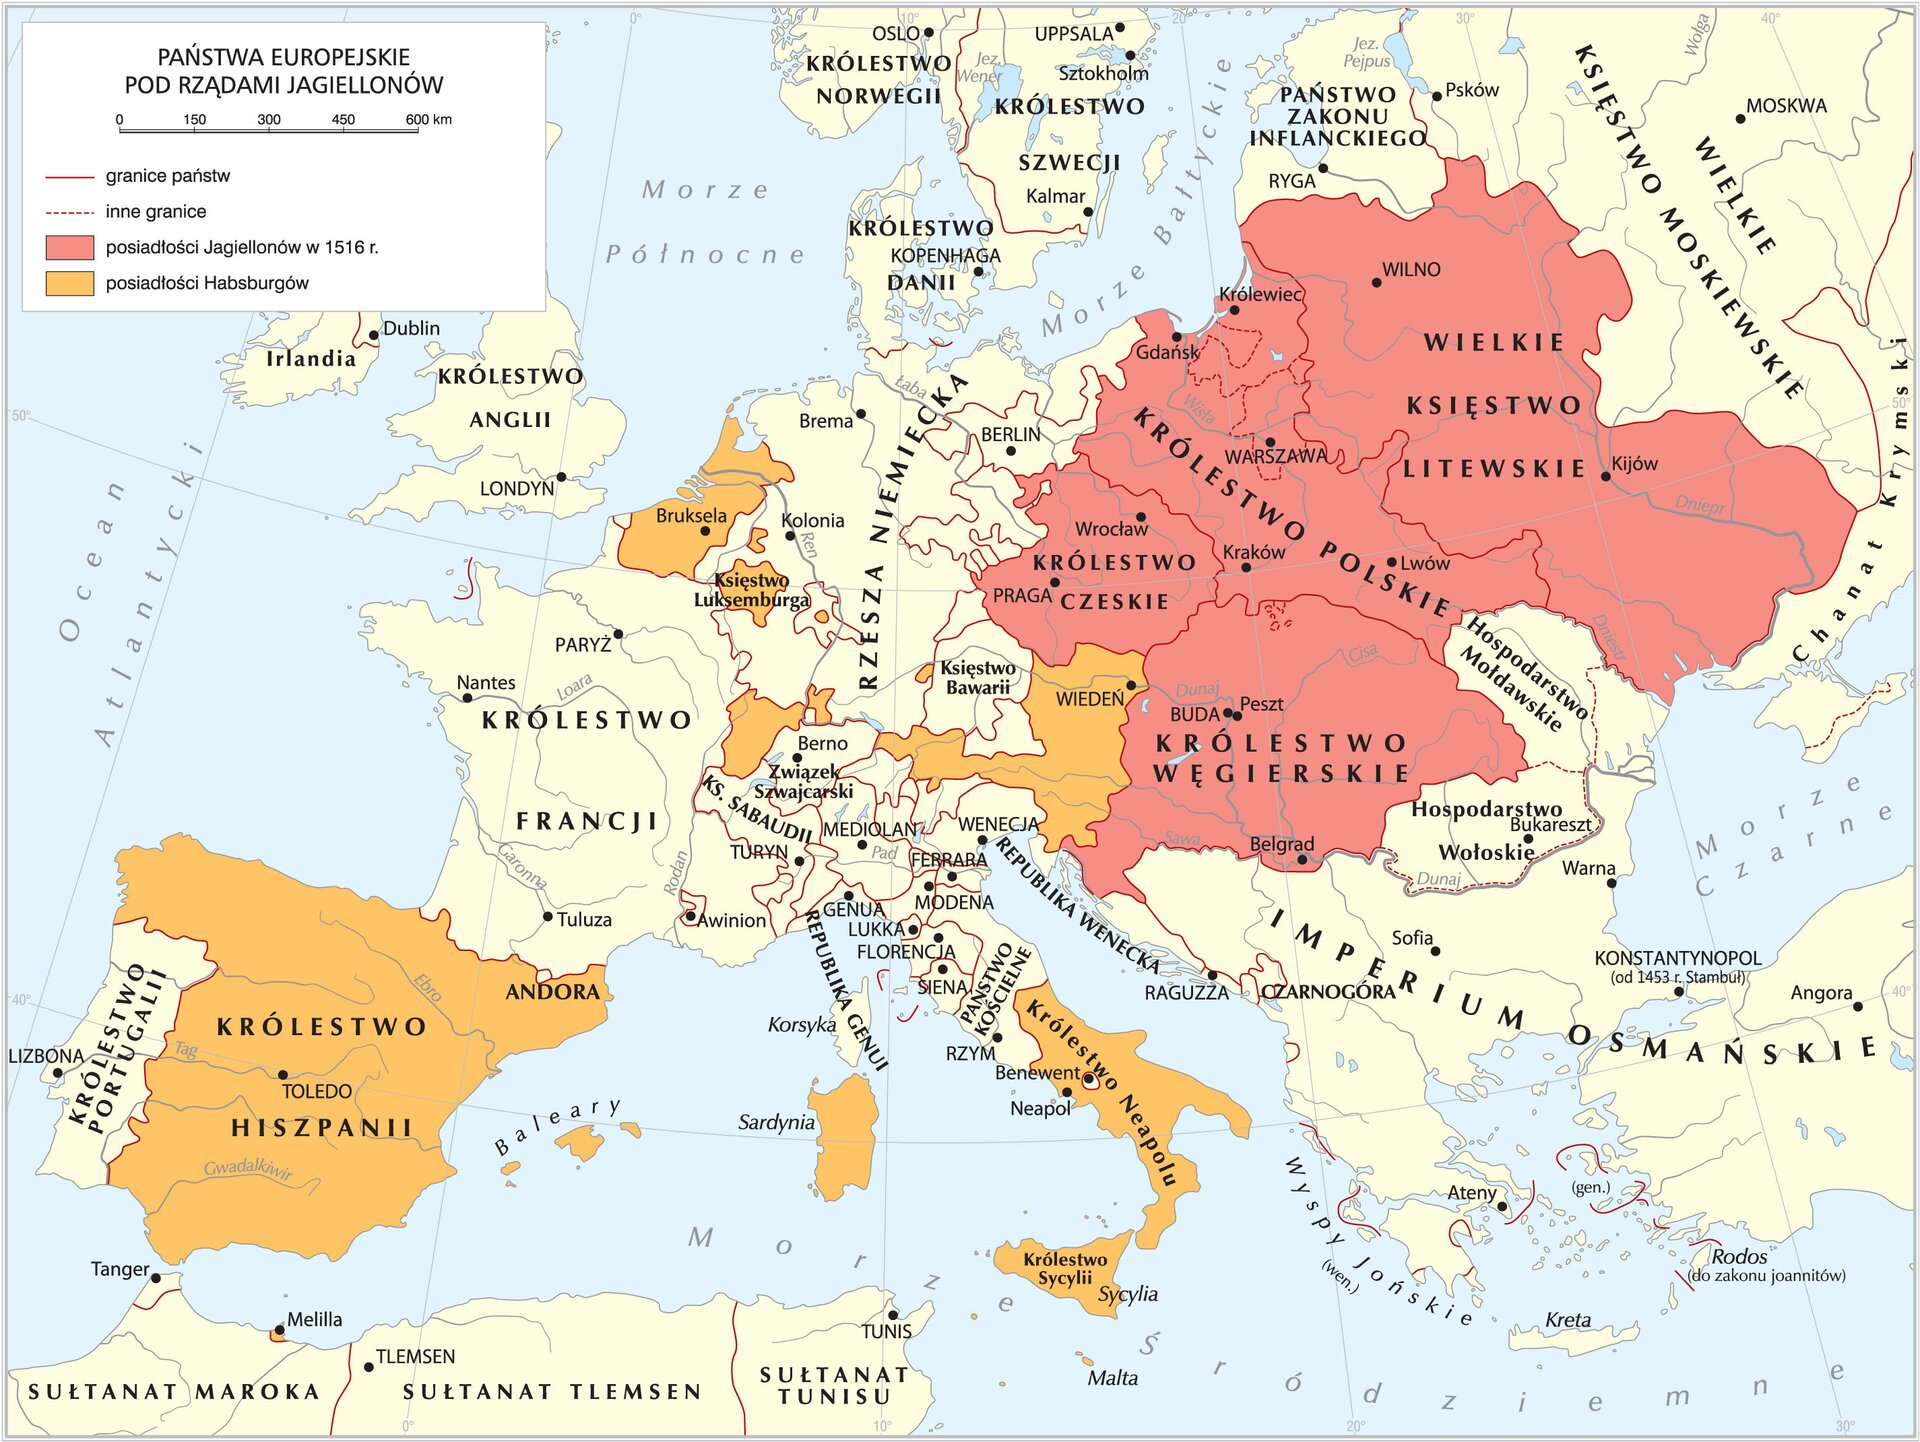 Ilustracja przedstawia mapę konturowa Europy z zaznaczonymi państwami europejskimi pod rządami Jagiellonów.  Posiadłości Jagiellonów w 1516 roku obejmowały Królestwo Polskie z Królewcem i Gdańskiem na północy, Warszawą w centralnej części oraz Krakowem i Lwowem na południu. Od wschodu Królestwo Polskie sąsiadowało z Wielkim Księstwem Litewskim, które także wchodziło w skład posiadłości Jagiellonów. Wielkie Księstwo litewskie obejmowało swoim zasięgiem tereny na północ od Wilna, przez Kijów, aż do wybrzeża Morza Czarnego. Do posiadłości Jagiellonów w 1516 roku należało także Królestwo Węgierskie (Buda, Peszt i Belgrad) oraz Królestwo Czeskie (Praga, Wrocław). Na mapie zaznaczono także posiadłości Habsburgów. Należą do nich leżące na zachodzie od Królestwa Wigierskiego tereny dzisiejszej Austrii z Wiedniem, obszar leżący na północ od współczesnej Szwajcarii, Księstwo Luksemburga oraz teren współczesnej Belgii z Brukselą, a także Królestwo Hiszpanii z Andorą i Królestwo Neapolu (południowa cześć półwyspu apenińskiego) z miastami Benewent i Neapol oraz Królestwo Sycylii i Sardynia oraz Baleary.